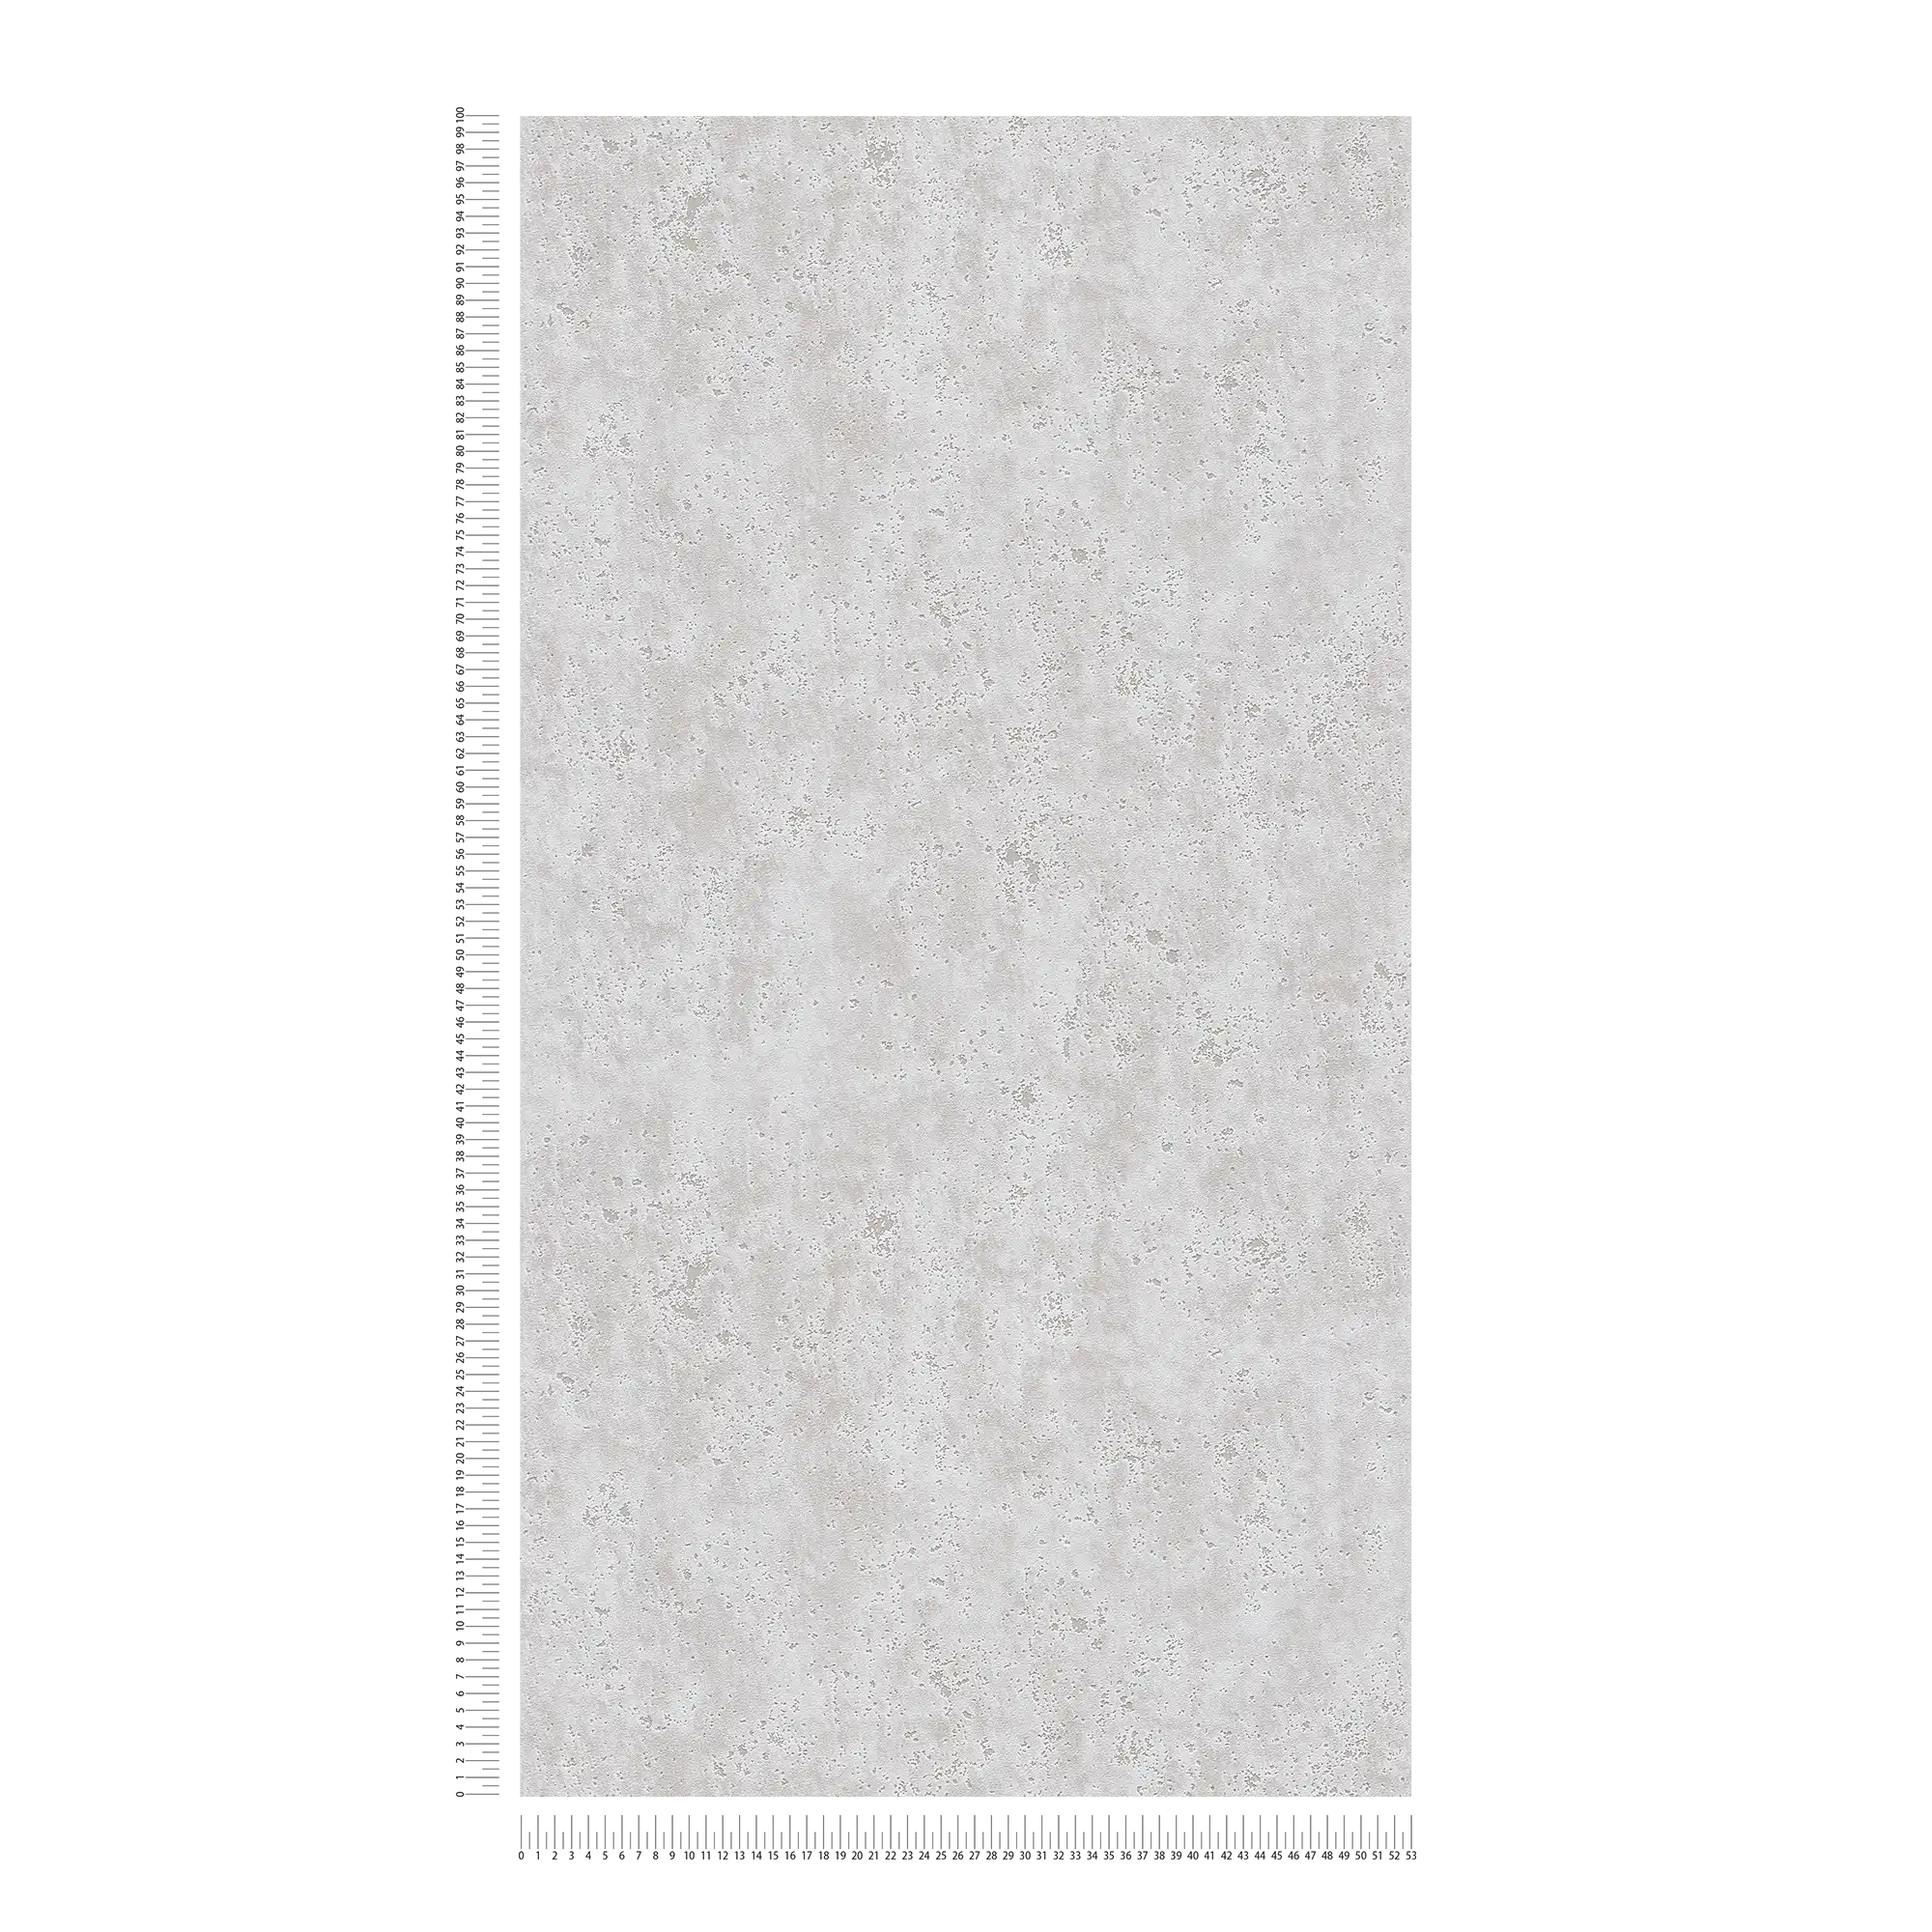             Carta da parati effetto cemento con colore e struttura superficiale - grigio
        